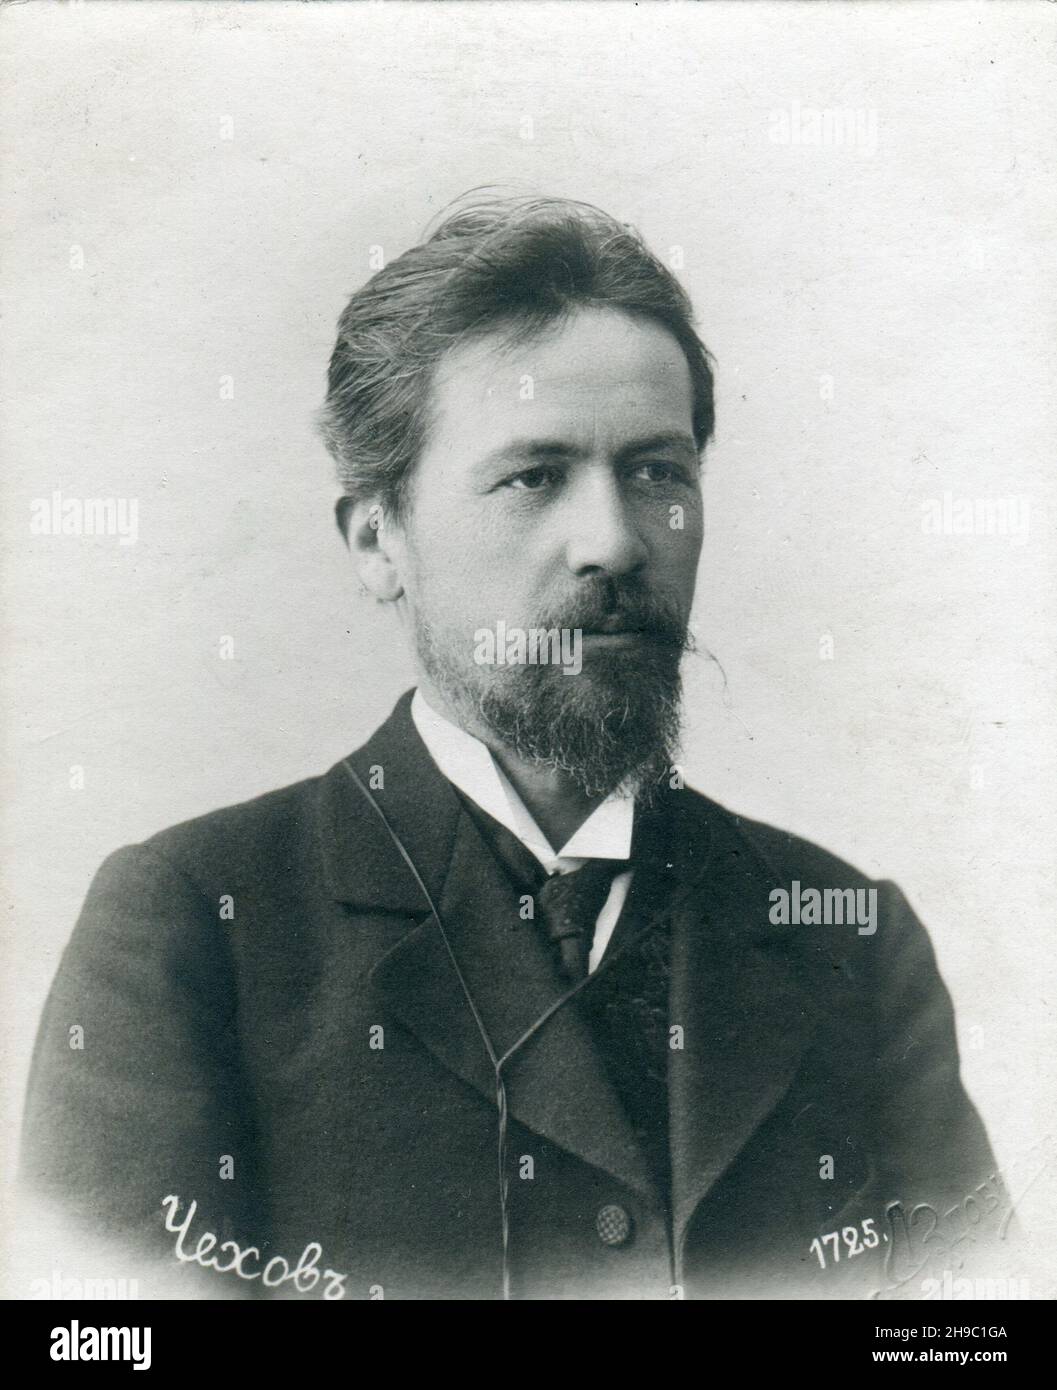 Anton Pavlovich Chekhov (in russo: Антон Павлович Чехов, 29 gennaio 1860 – 15 luglio 1904) è stato un . Cartolina d'epoca dell'Impero Russo, 1899. (Frammento). Foto Stock